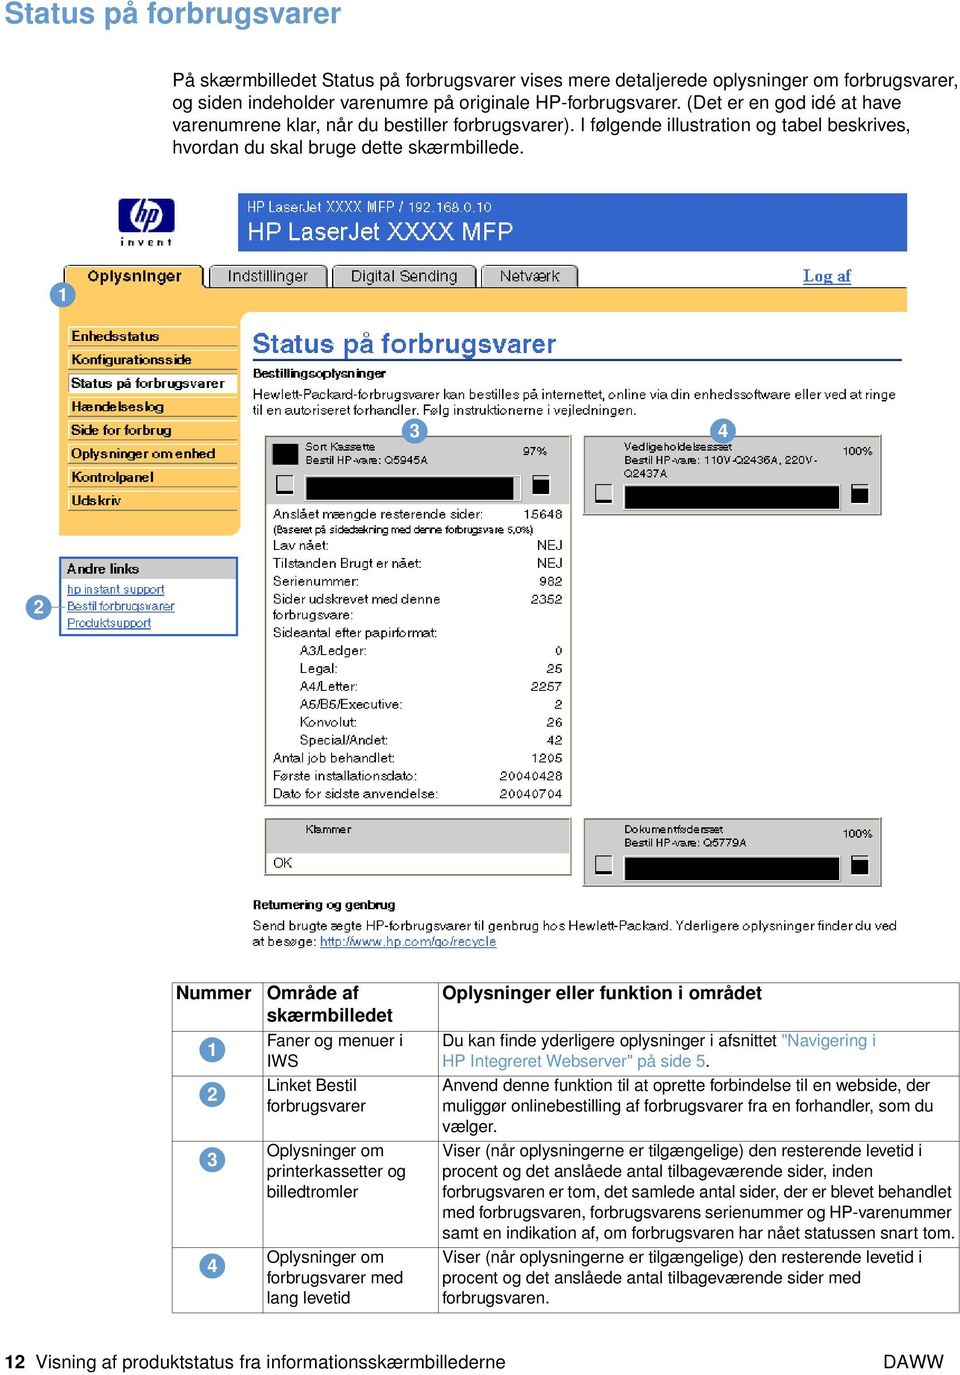 Nummer Område af skærmbilledet Faner og menuer i IWS Linket Bestil forbrugsvarer Oplysninger om printerkassetter og billedtromler Oplysninger om forbrugsvarer med lang levetid Oplysninger eller